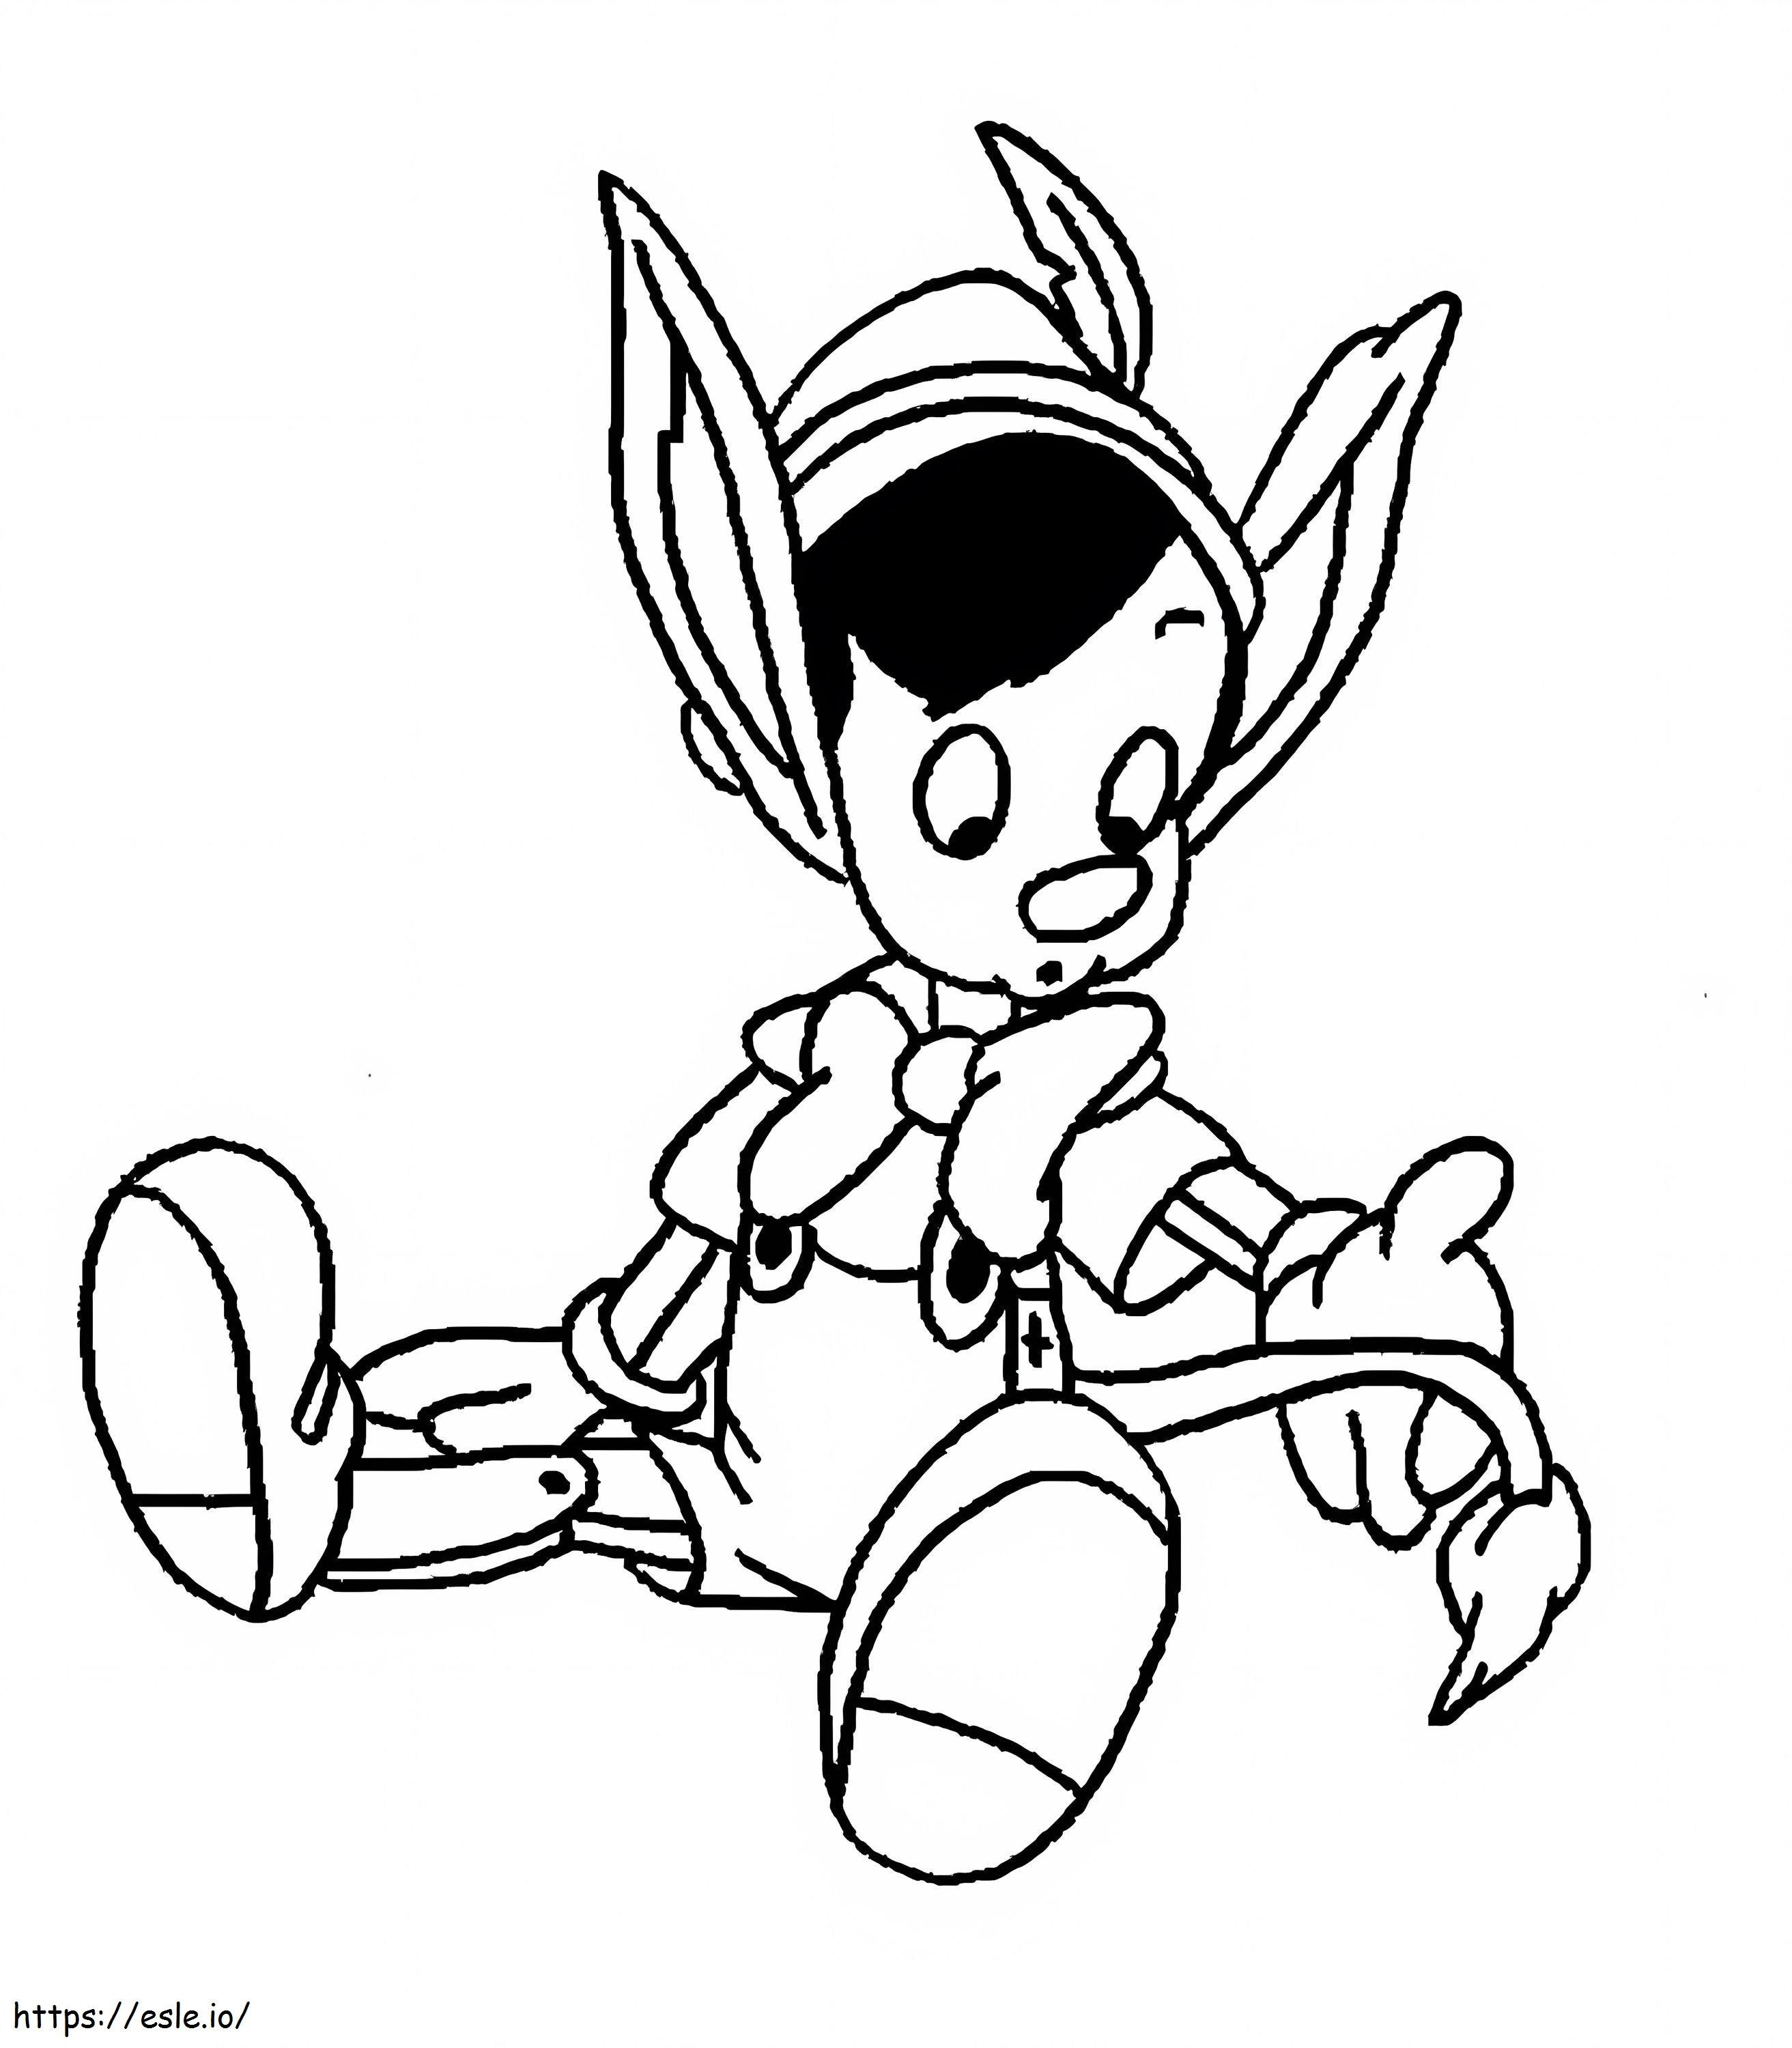 Pinocchio seduto da colorare